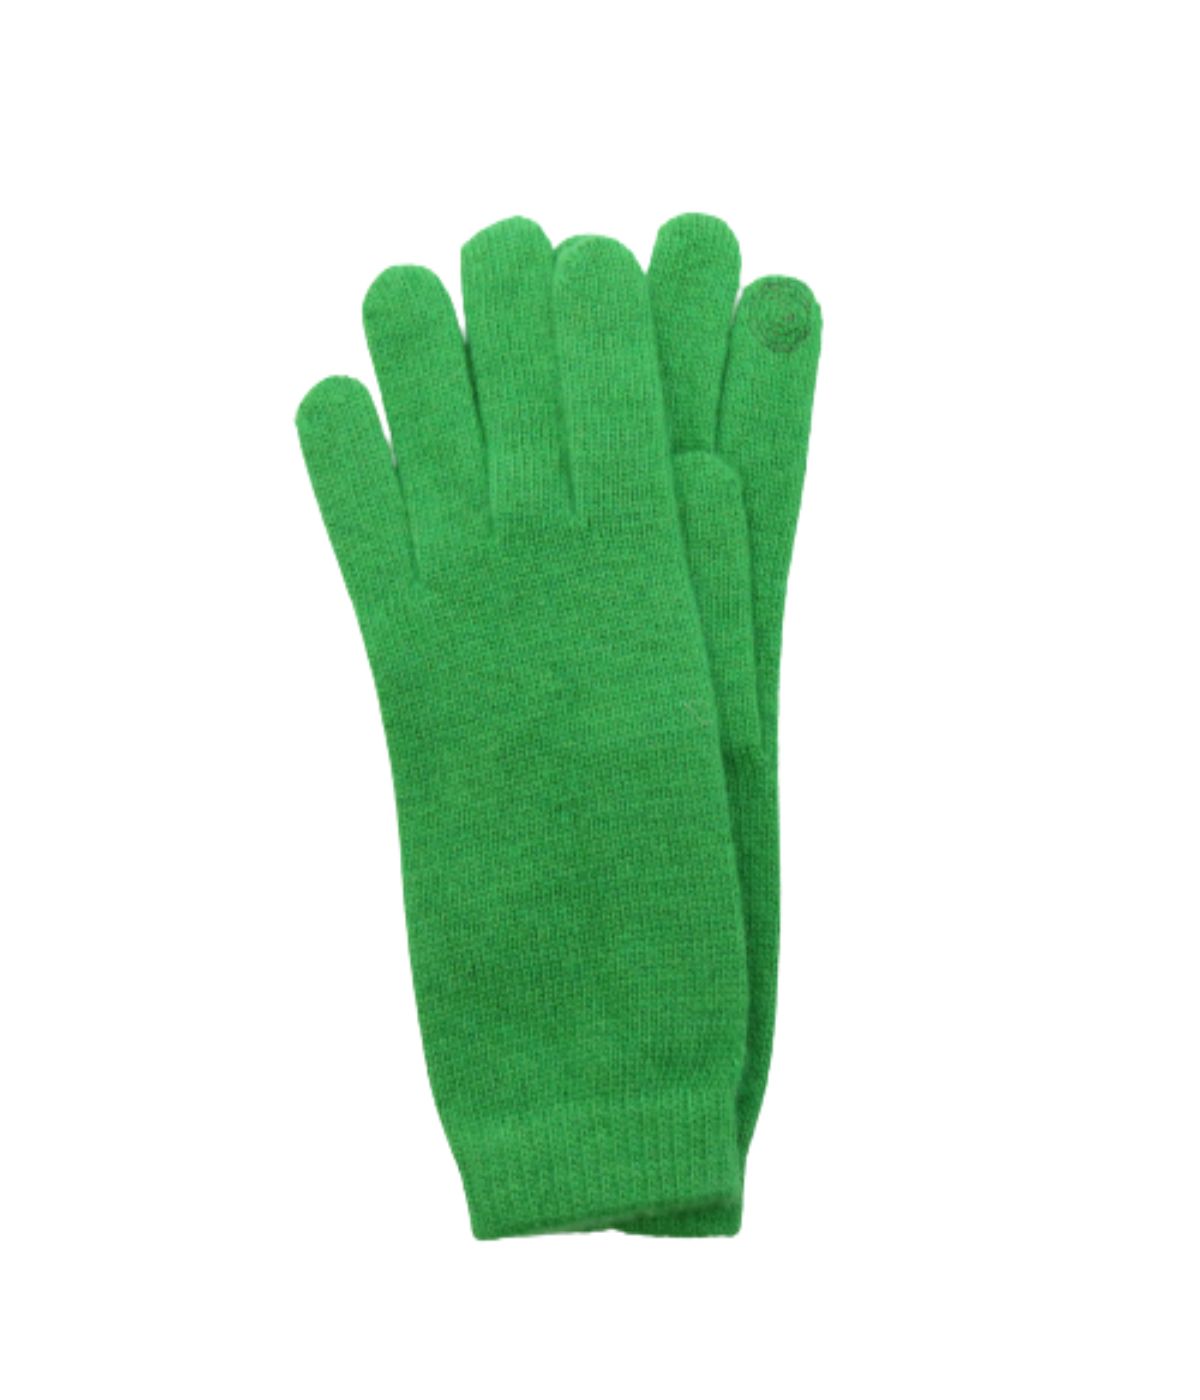 Tech Gloves Rosemary – Gordmans